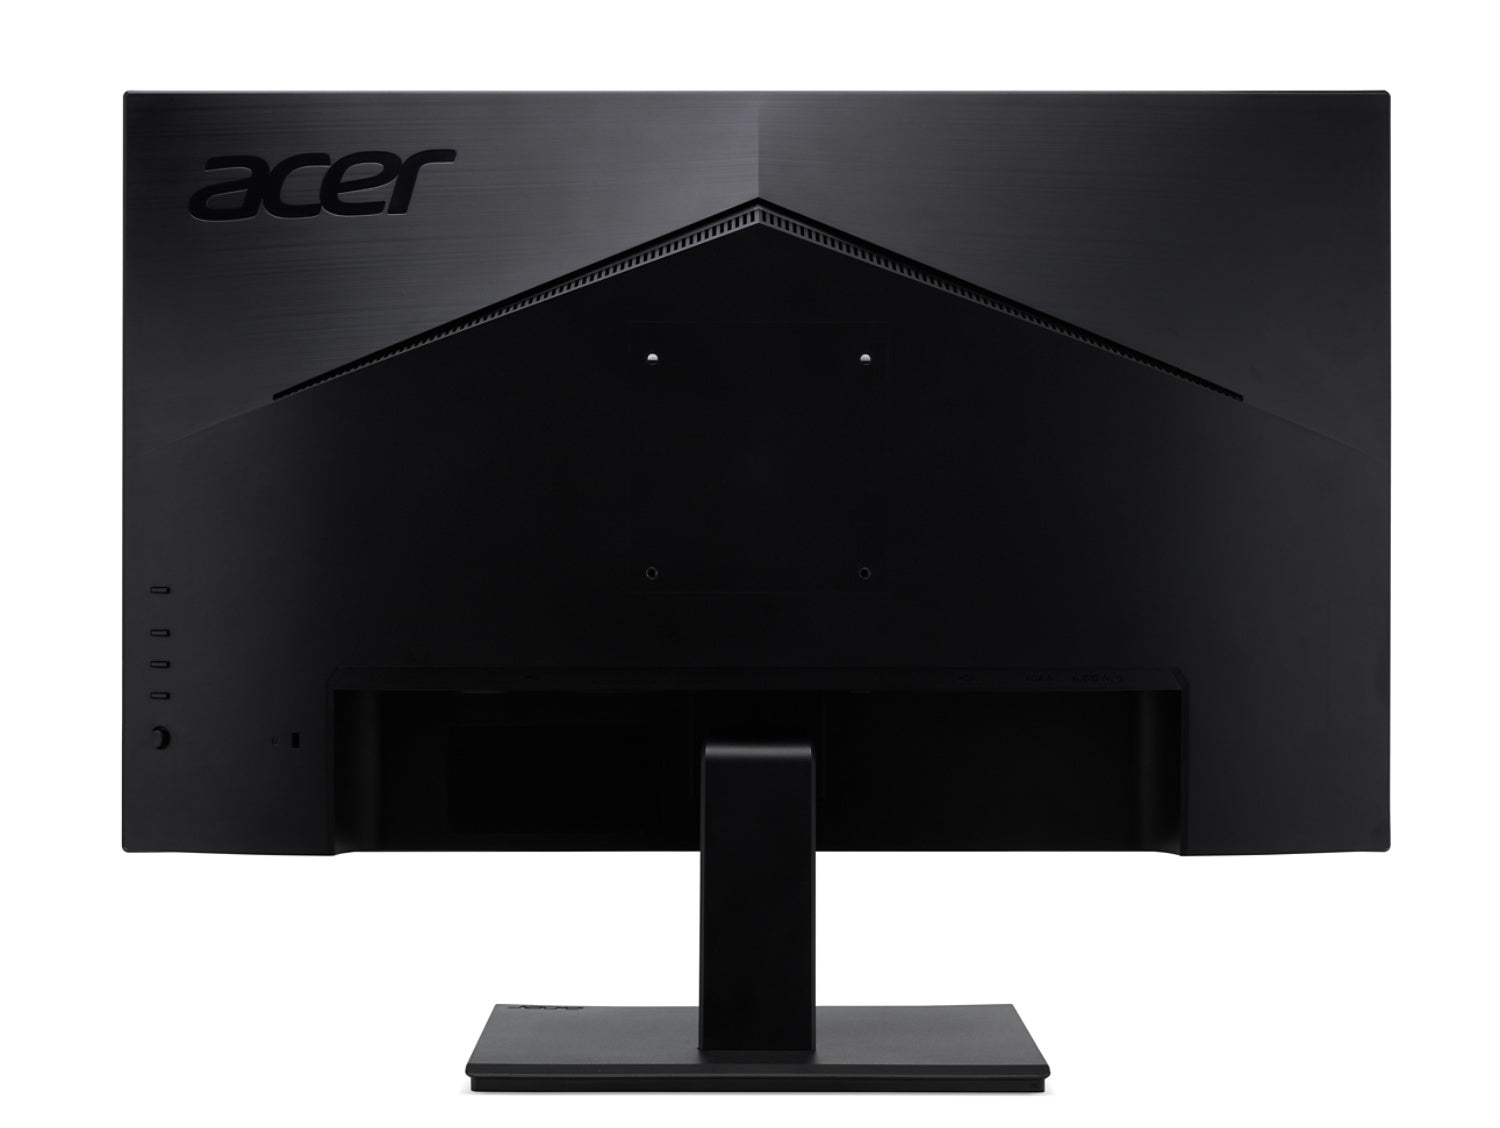 Monitor Acer V227Q Vero V7 21.5 Fhd 1920 X 1080 4Ms Gtg Hdmi 1; Vga 3 Años De Garantia En Cs/ Bundle. (Incluye Cable Y Soporte Vesa)